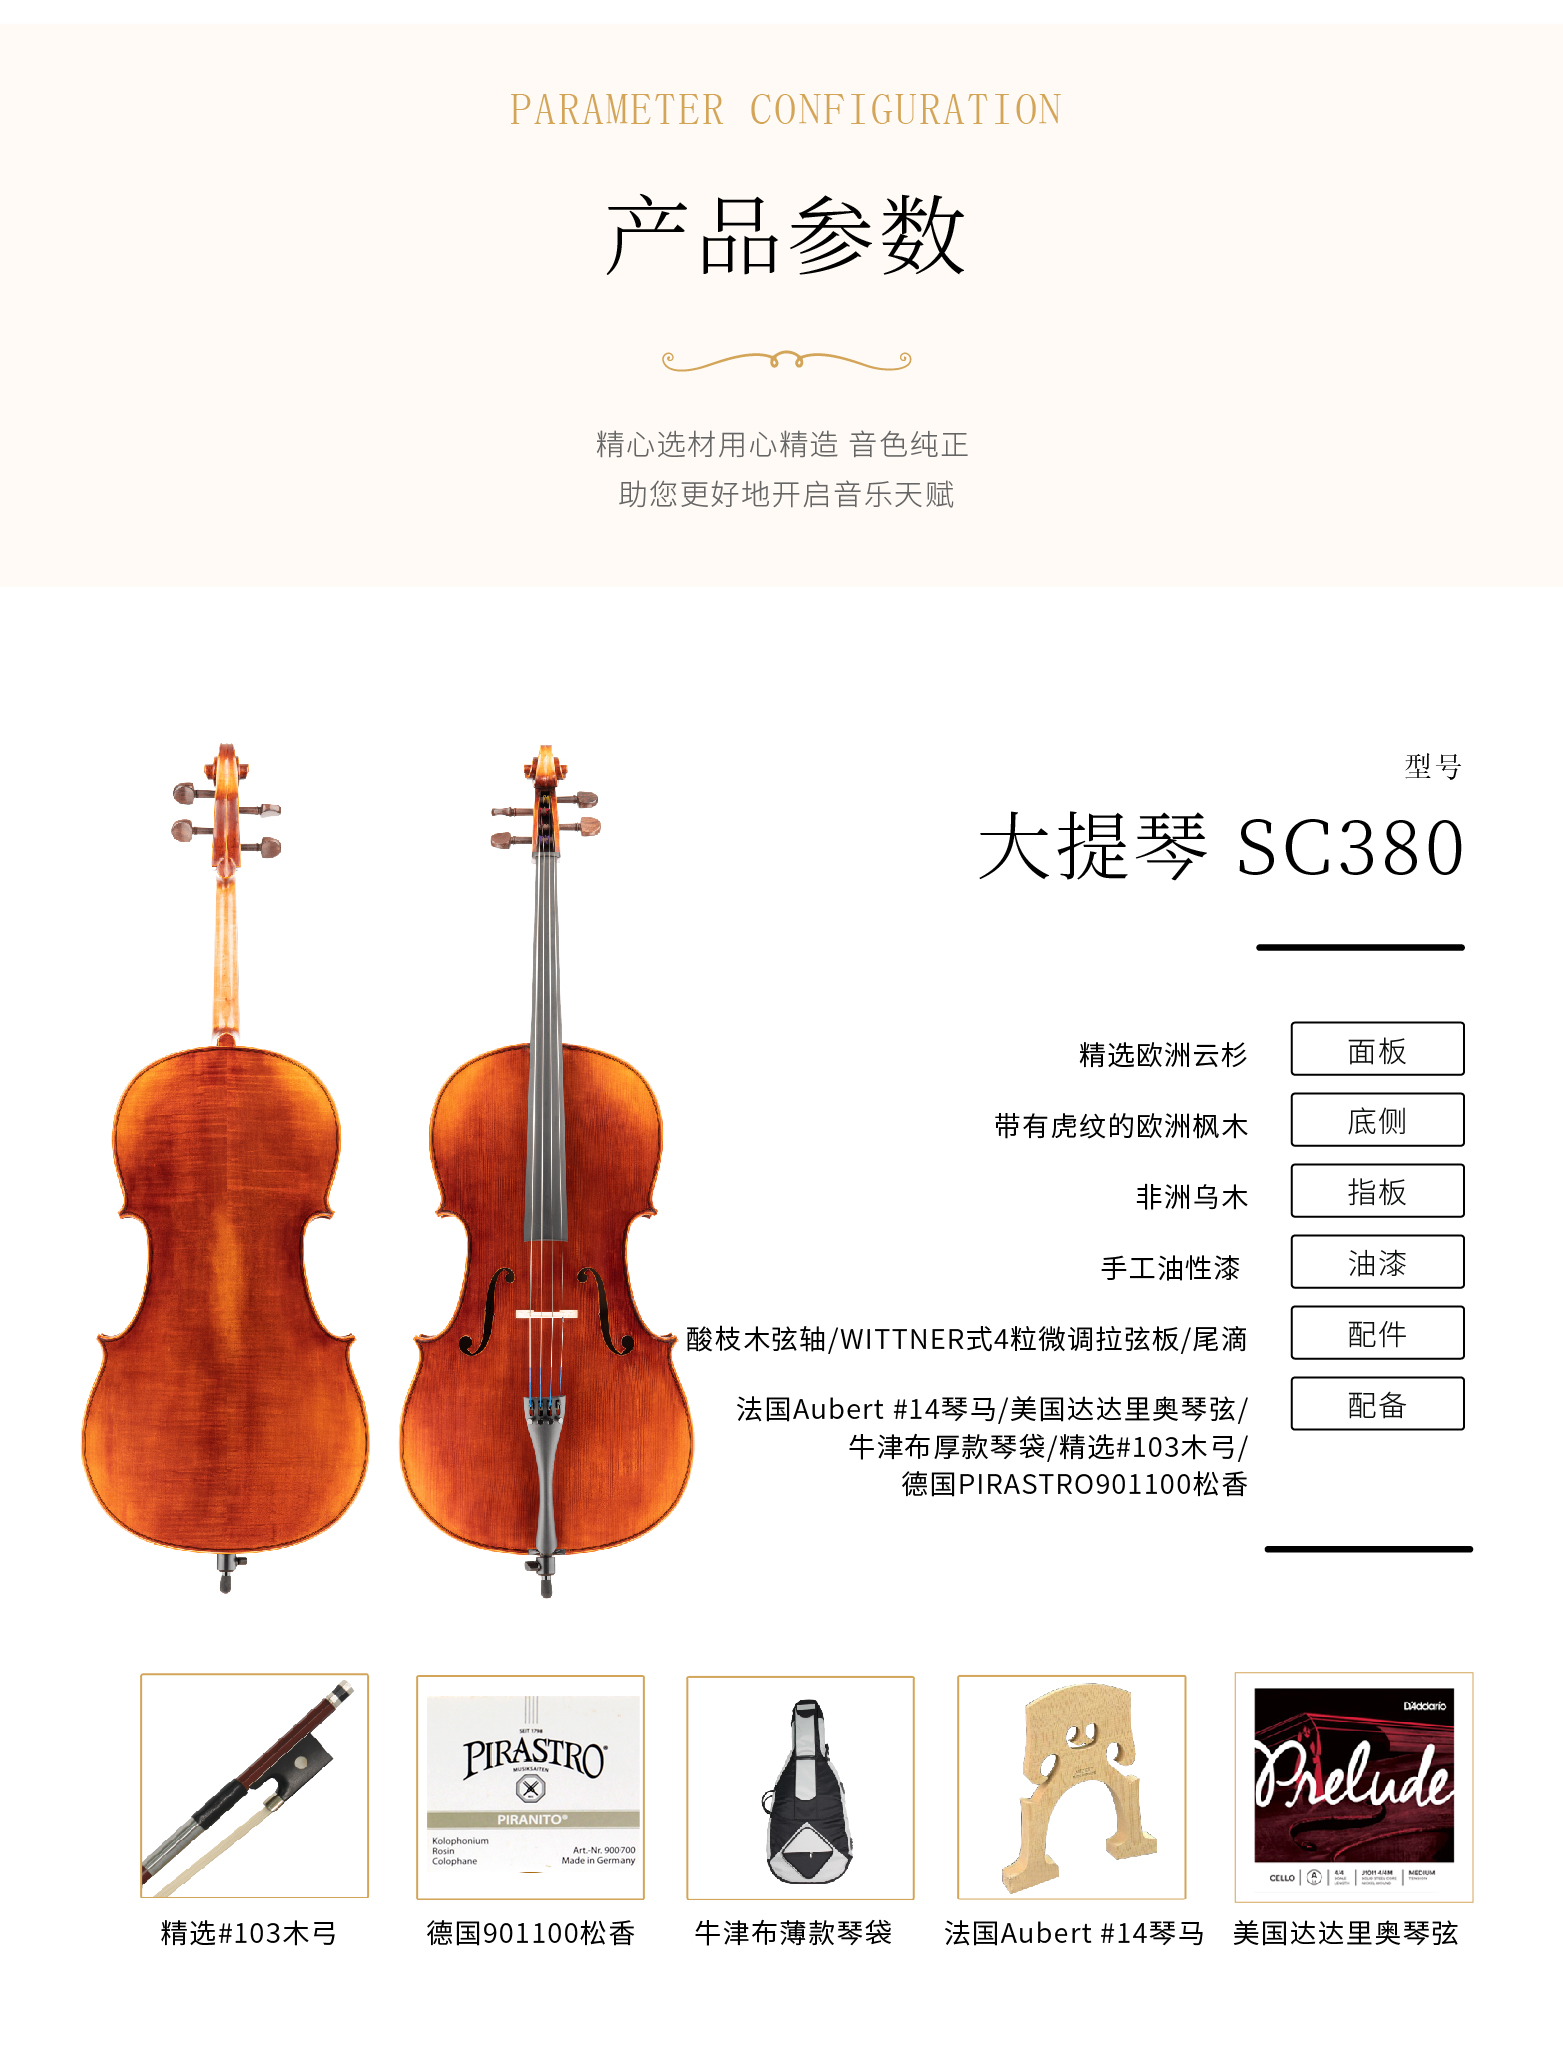 熙珑乐器专营店-详情-v1-2_SC380大提琴_复制_PC-副本-2_03.png